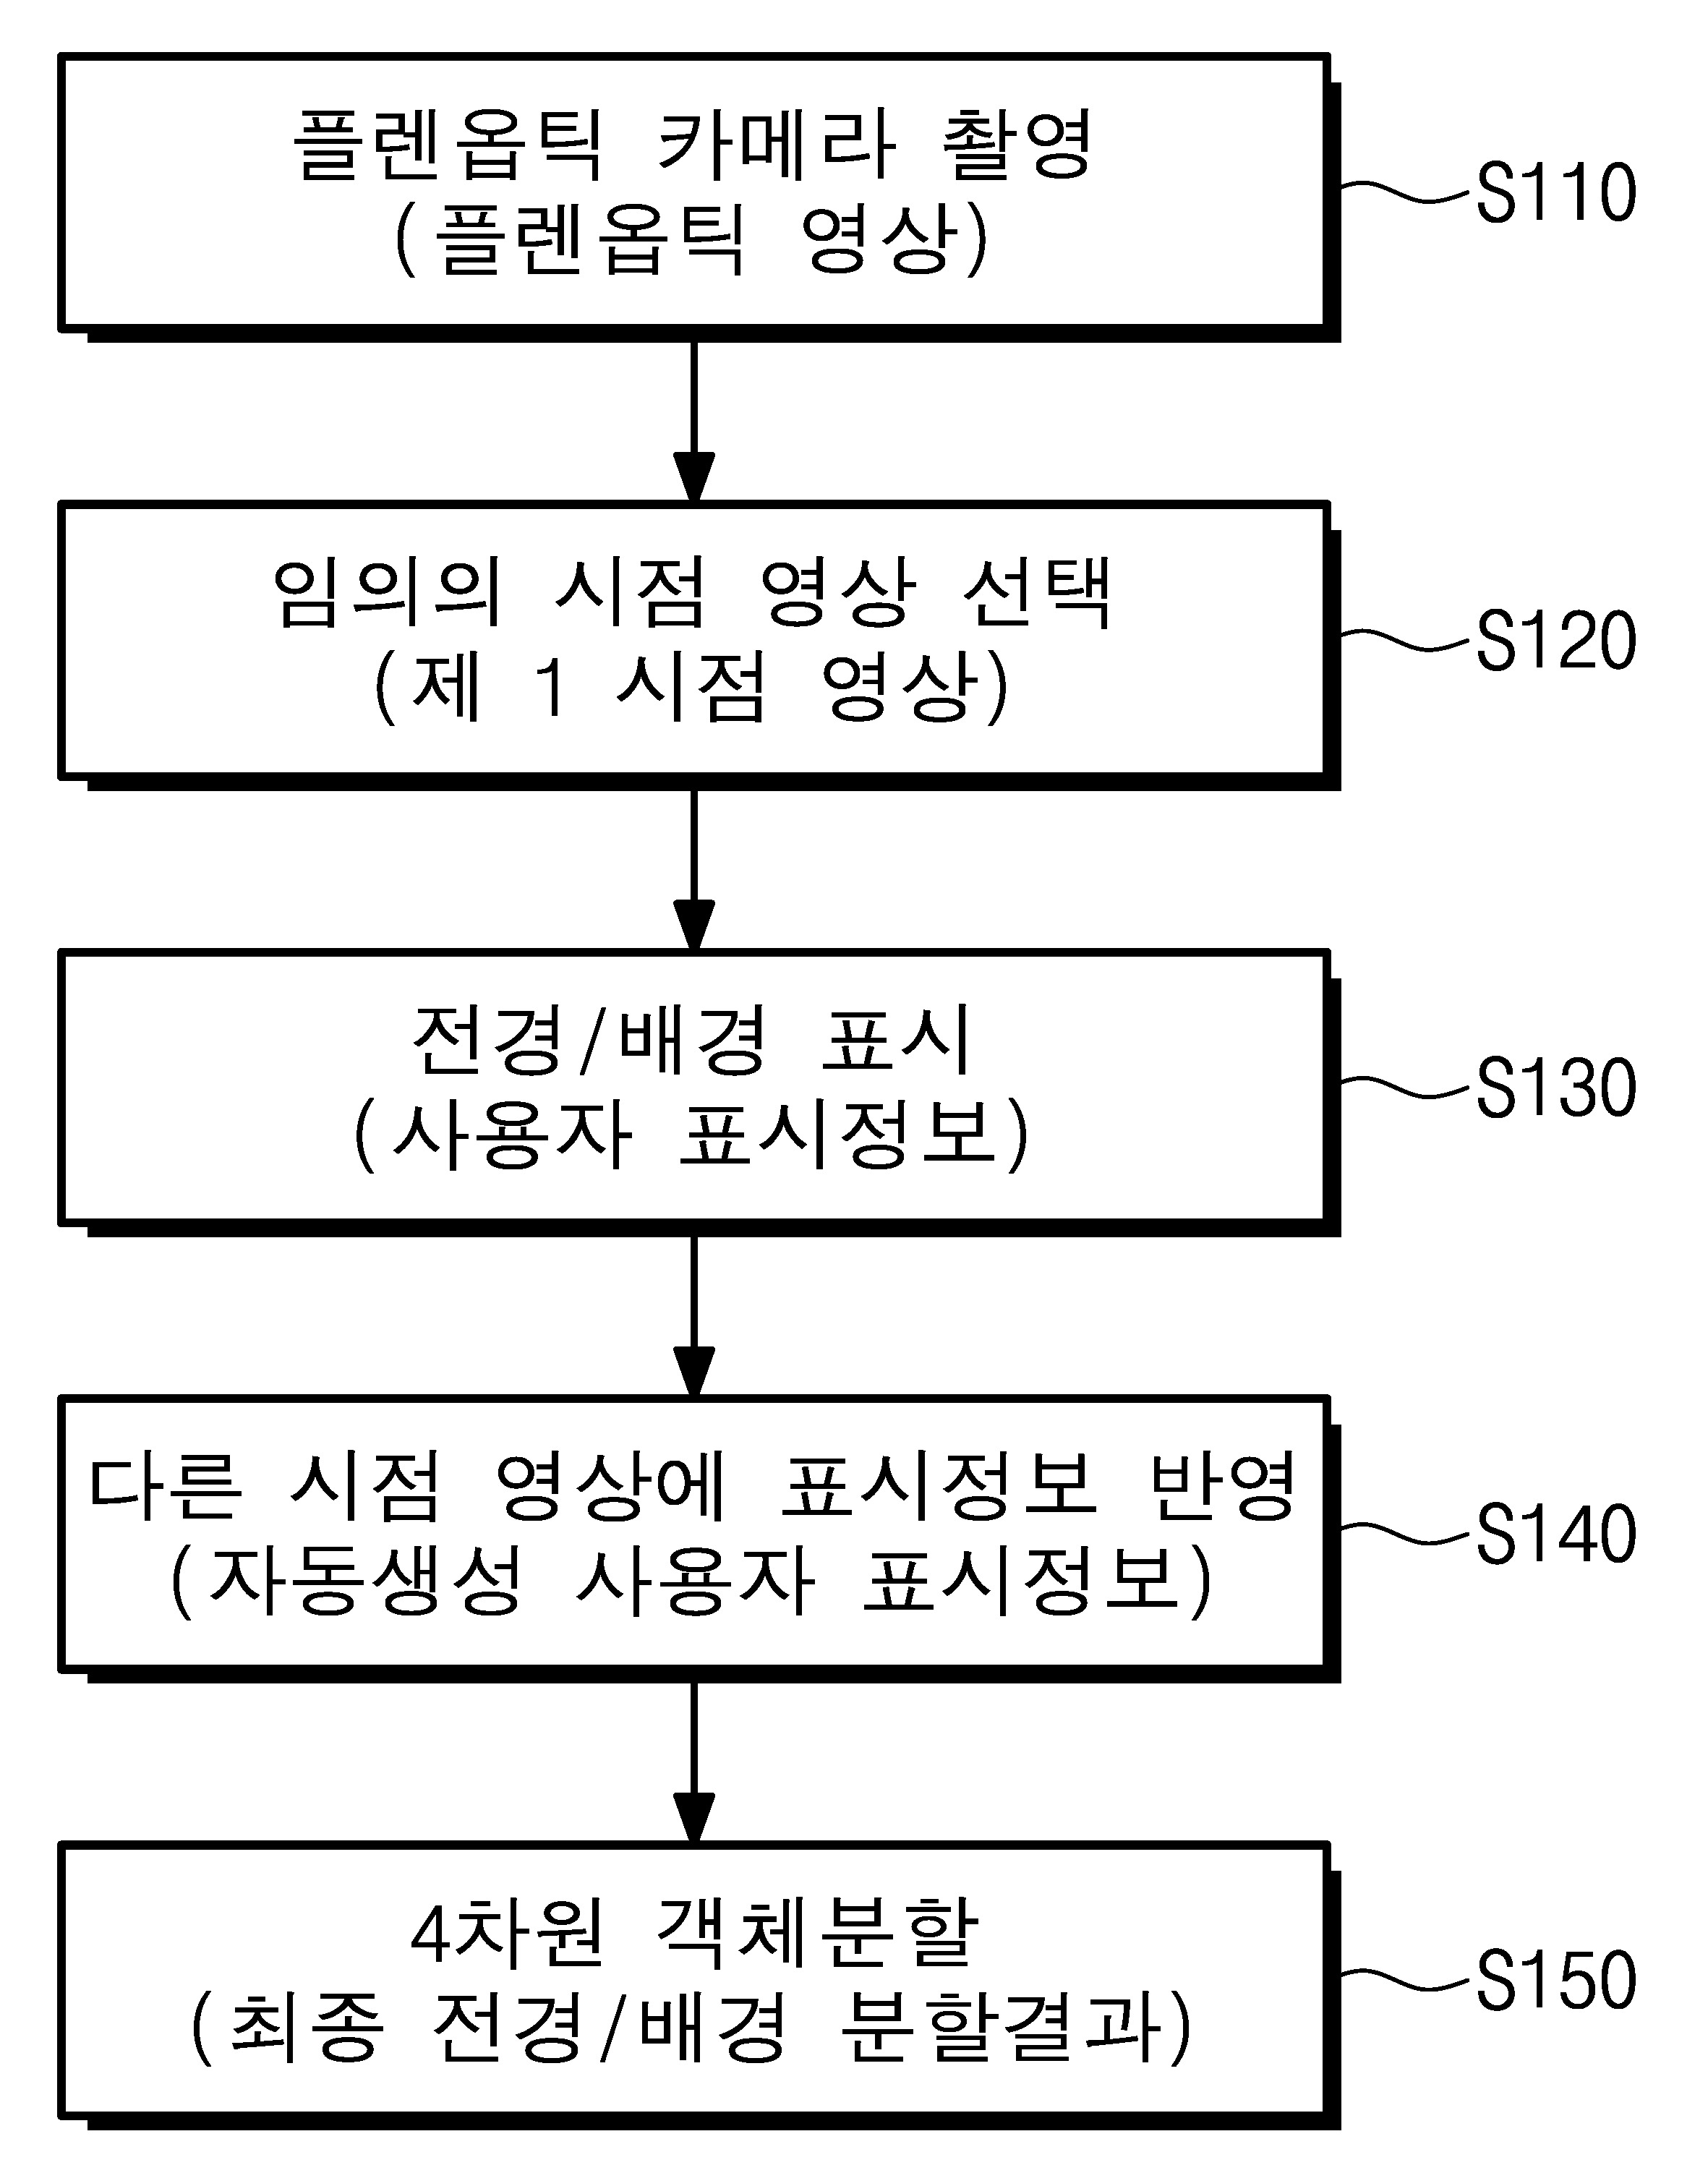 한국어 생략어 복원을 위한 학습 말뭉치 생성 장치 및 방법